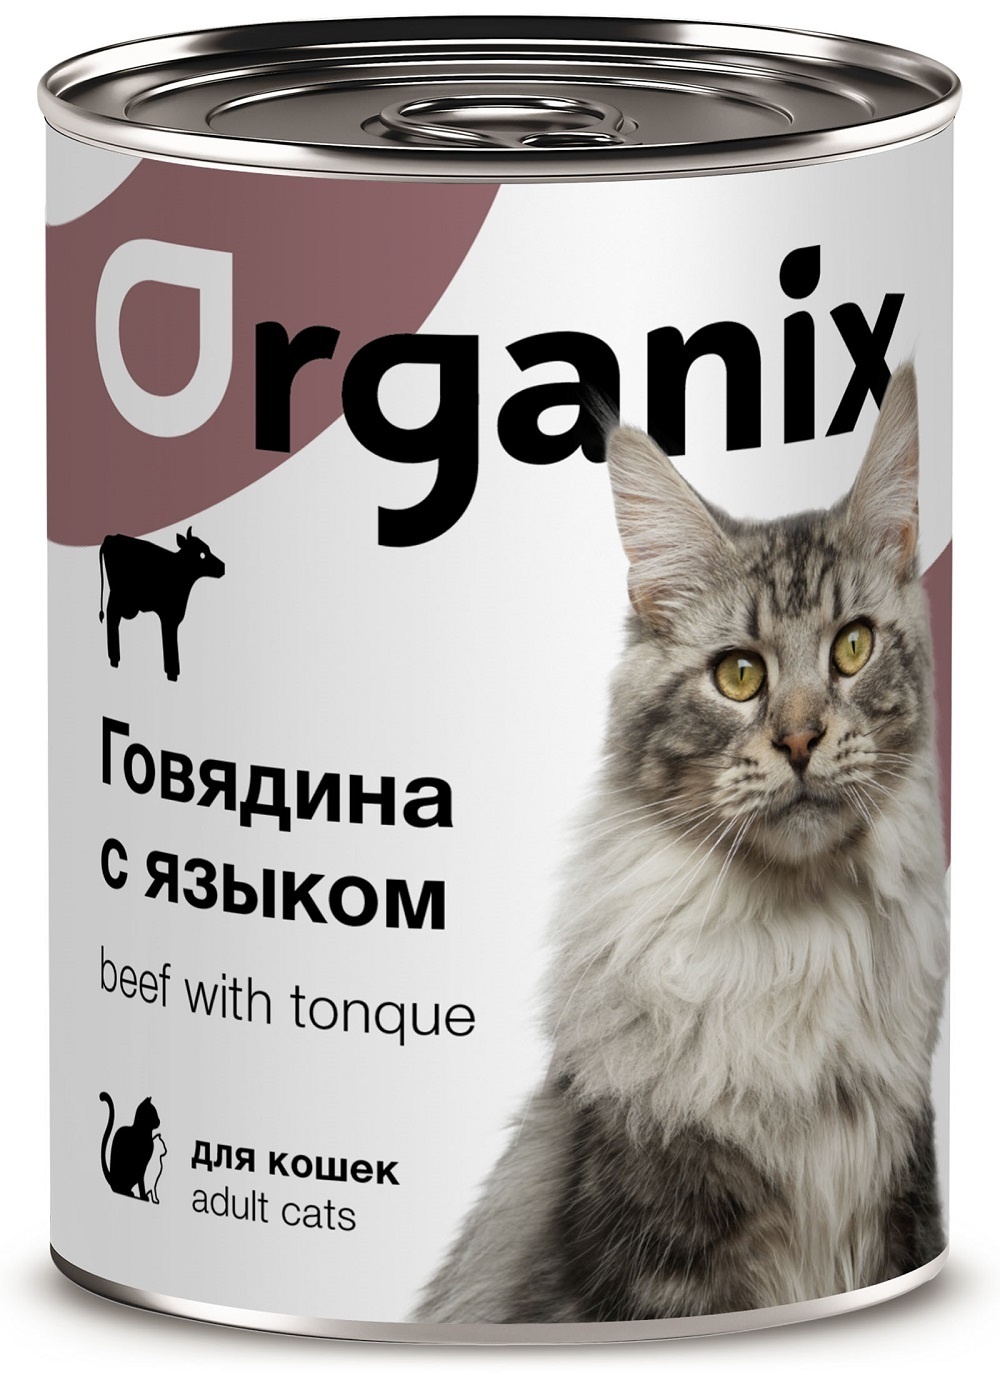 Organix консервы Organix консервы с говядиной и языком для кошек (100 г) organix консервы organix консервы для кошек с телятиной и языком 100 г